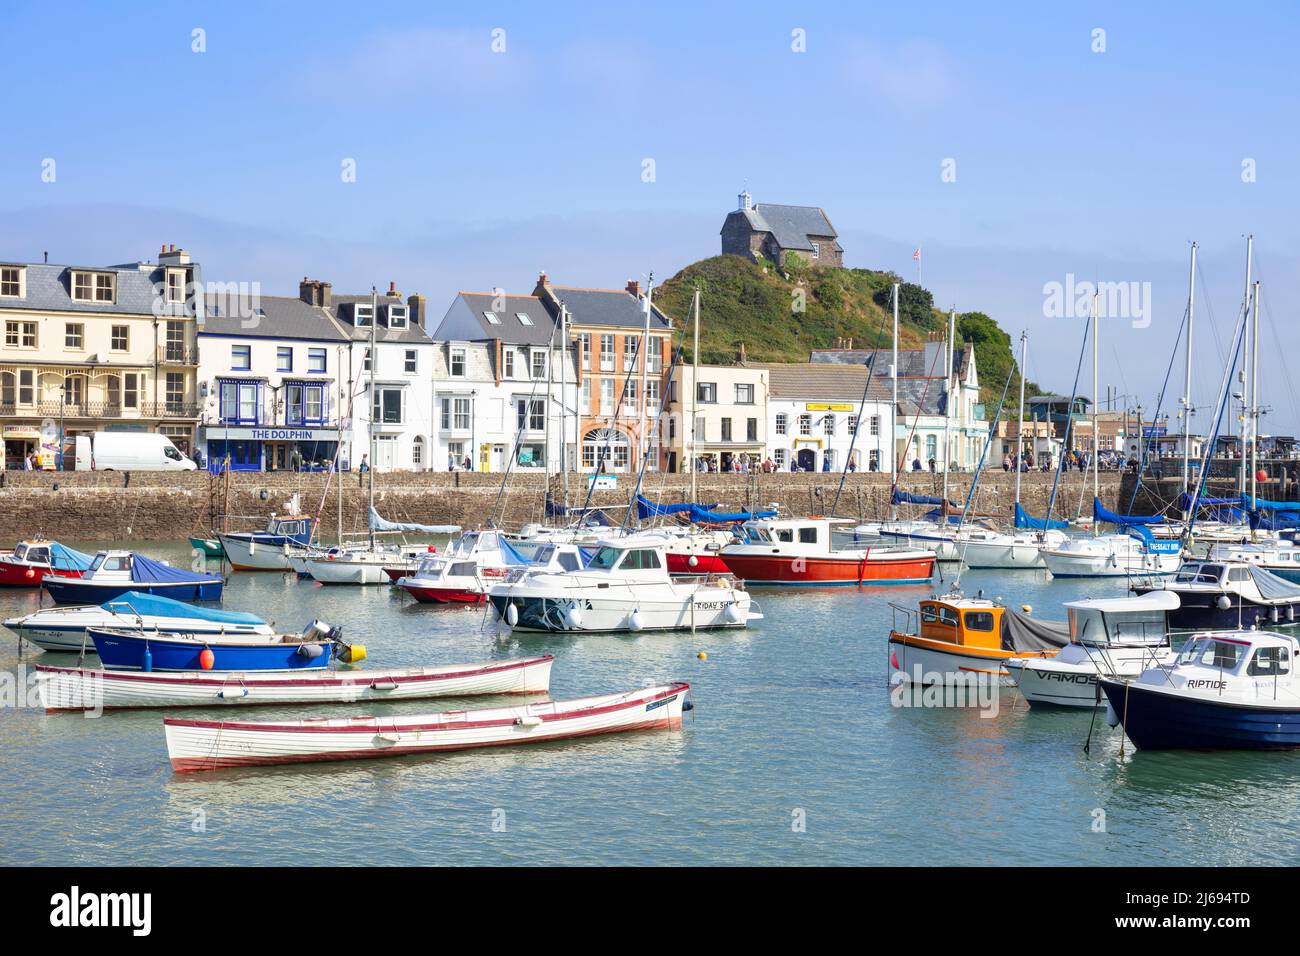 Port d'Ilfracombe avec yachts et chapelle Saint-Nicolas surplombant la ville d'Ilfracombe, Devon, Angleterre, Royaume-Uni Banque D'Images